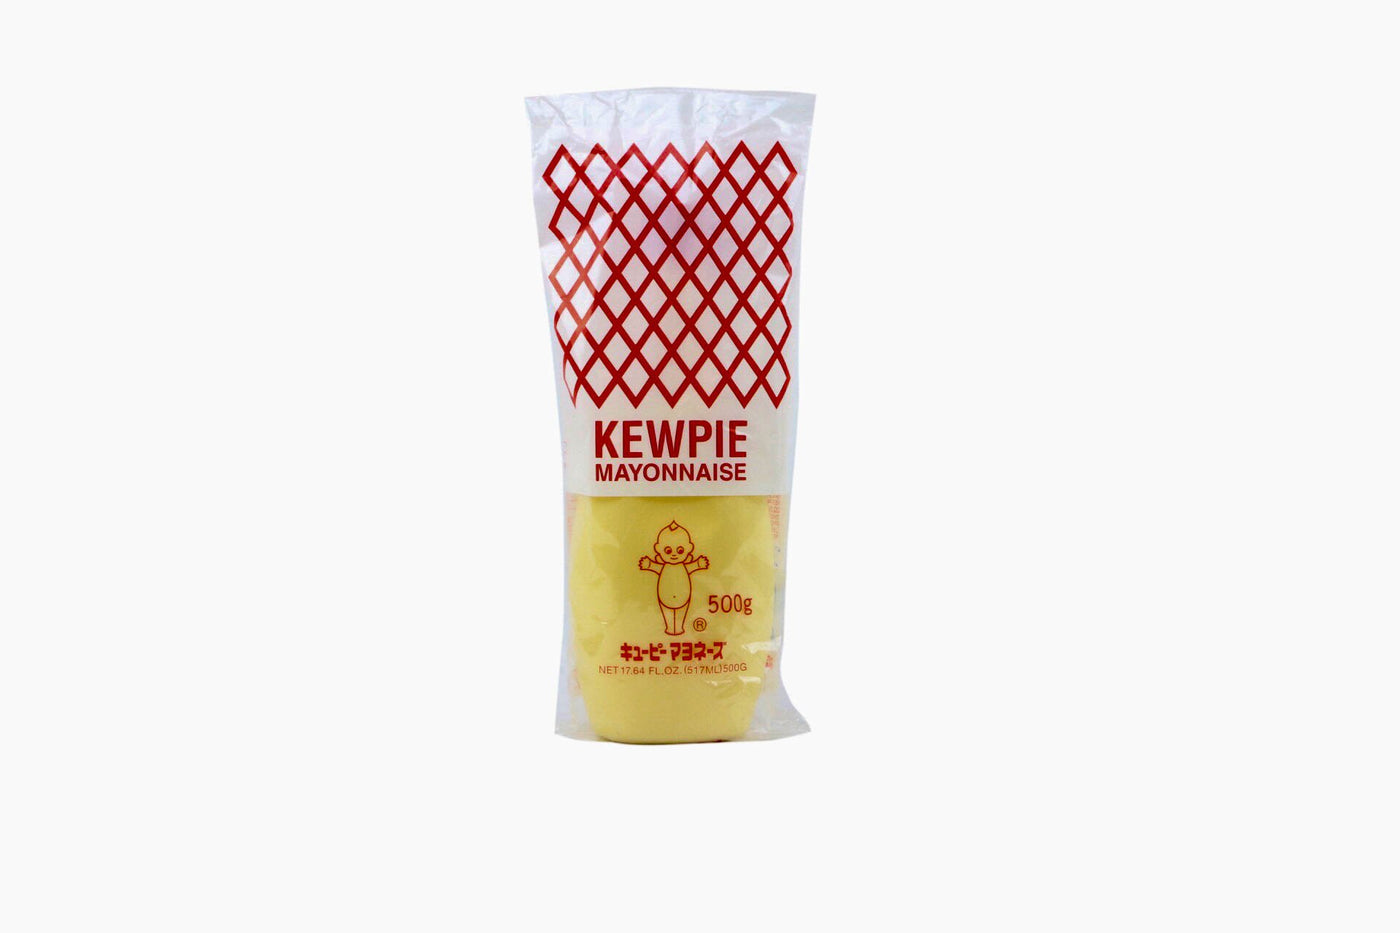 Kewpie Mayonnaise, 17.64 fl oz